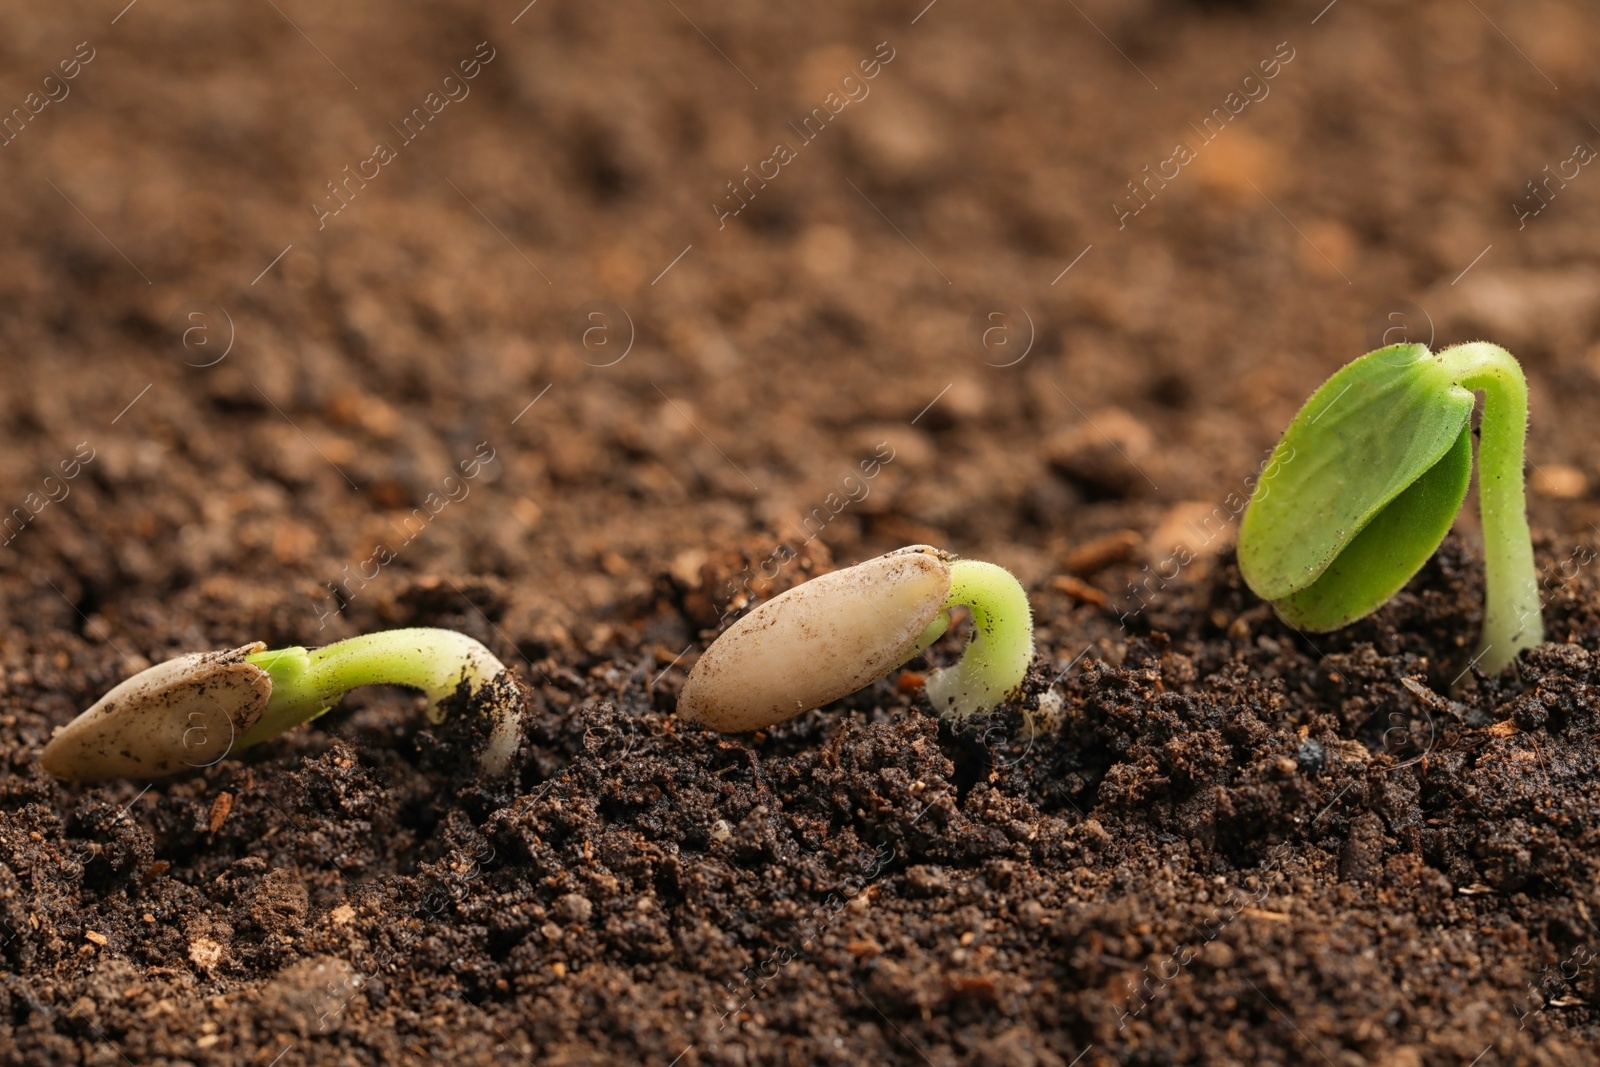 Photo of Little green seedlings growing in fertile soil